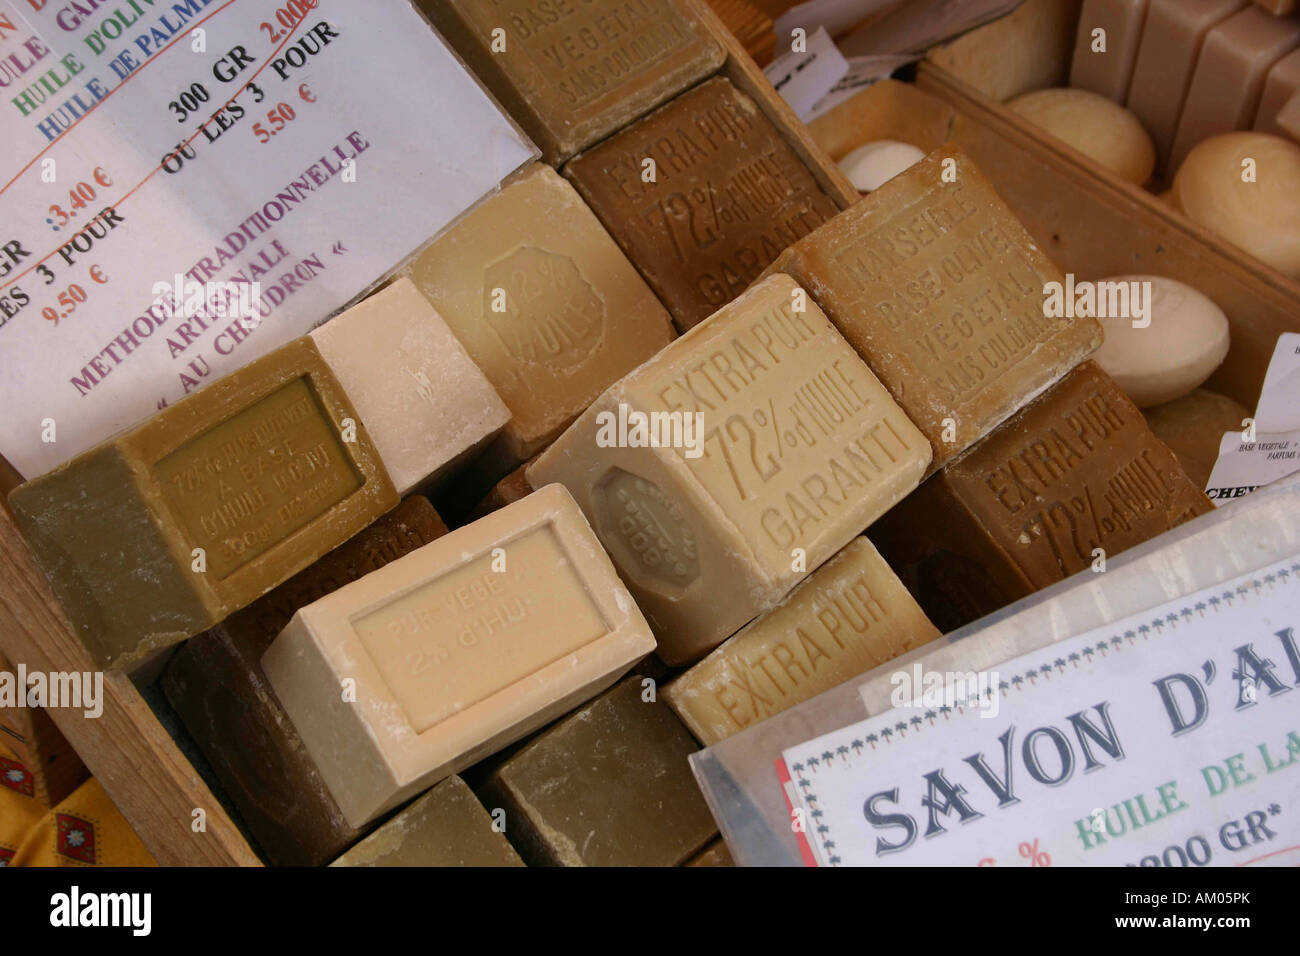 Soap, market, France Stock Photo